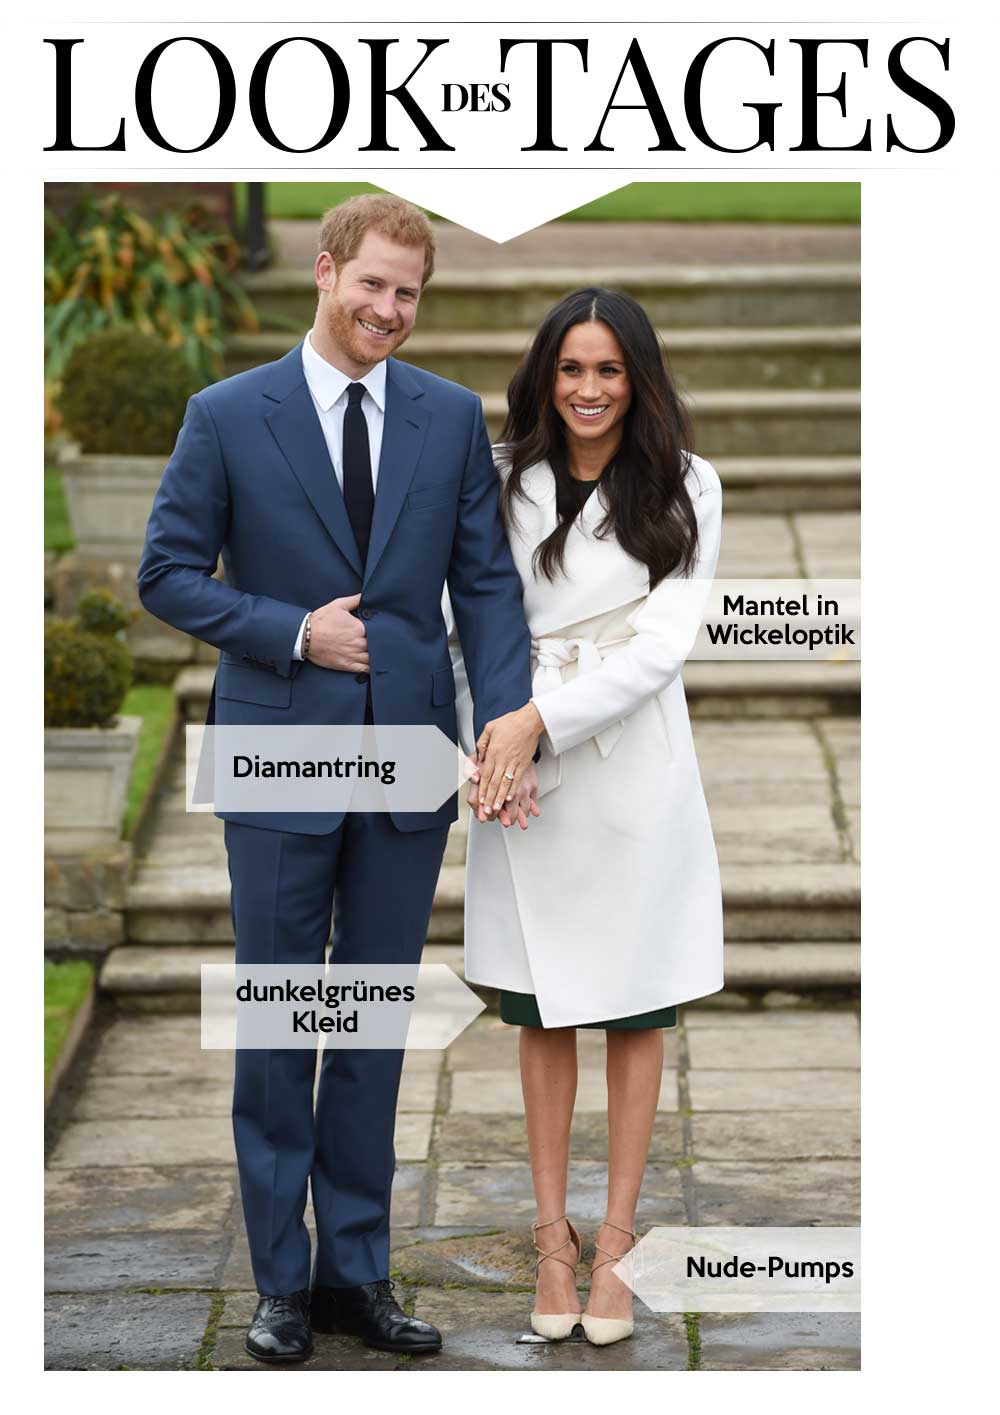 Hand in Hand erschienen Prinz Harry und Meghan Markle vor den Fotografen. (Bild: Getty Images)